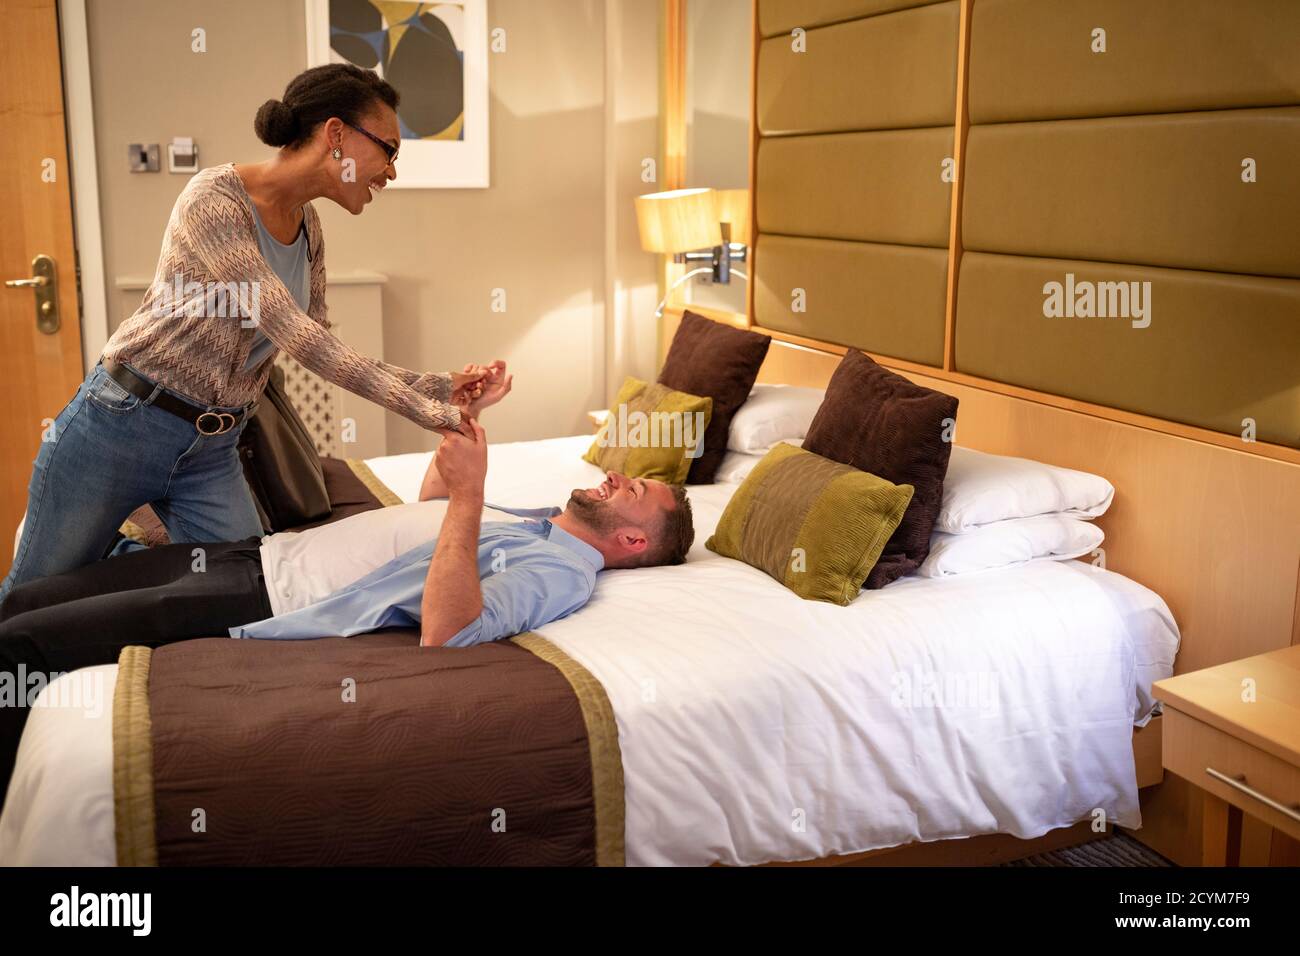 Ein multiethnisches Paar, das in einem Hotelzimmer verspielt ist, hat einen romantischen Abend geplant. Stockfoto